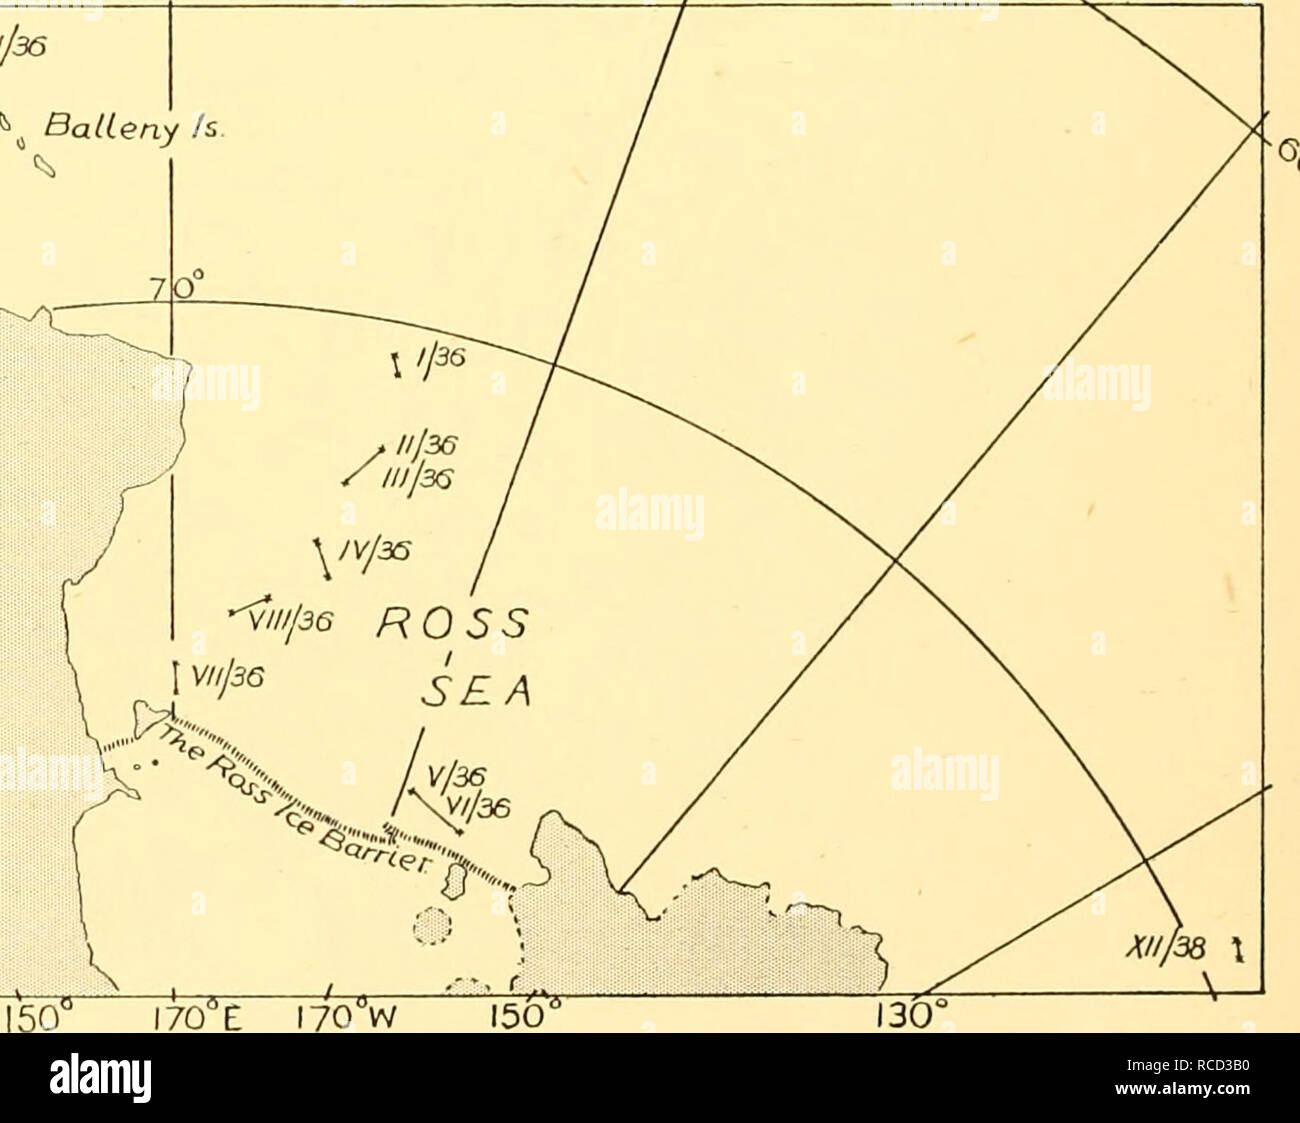 . Rapports de découverte. La découverte (navire) ; les expéditions scientifiques ; océan ; l'Antarctique, îles Falkland. &Lt ;/^ ^/v/38///36 y/^ 38 h BalLeny. 110 130 Fig. 1(6). Fig. I. Les sondages océaniques. Positions entre sondages continus qui ont été obtenus avec l'Acadie' 'enregistreur. (A) près des îles Malouines, à travers le Burdwood Bank et au large de l'entrée ouest du détroit de Magellan à la. (V) dans la mer de Ross, s'approcher et s'éloigner de la Terre Adélie, et au nord-ouest des îles Balleny.. Veuillez noter que ces images sont extraites de la page numérisée des images qui peuvent avoir été numériquement de commu Banque D'Images